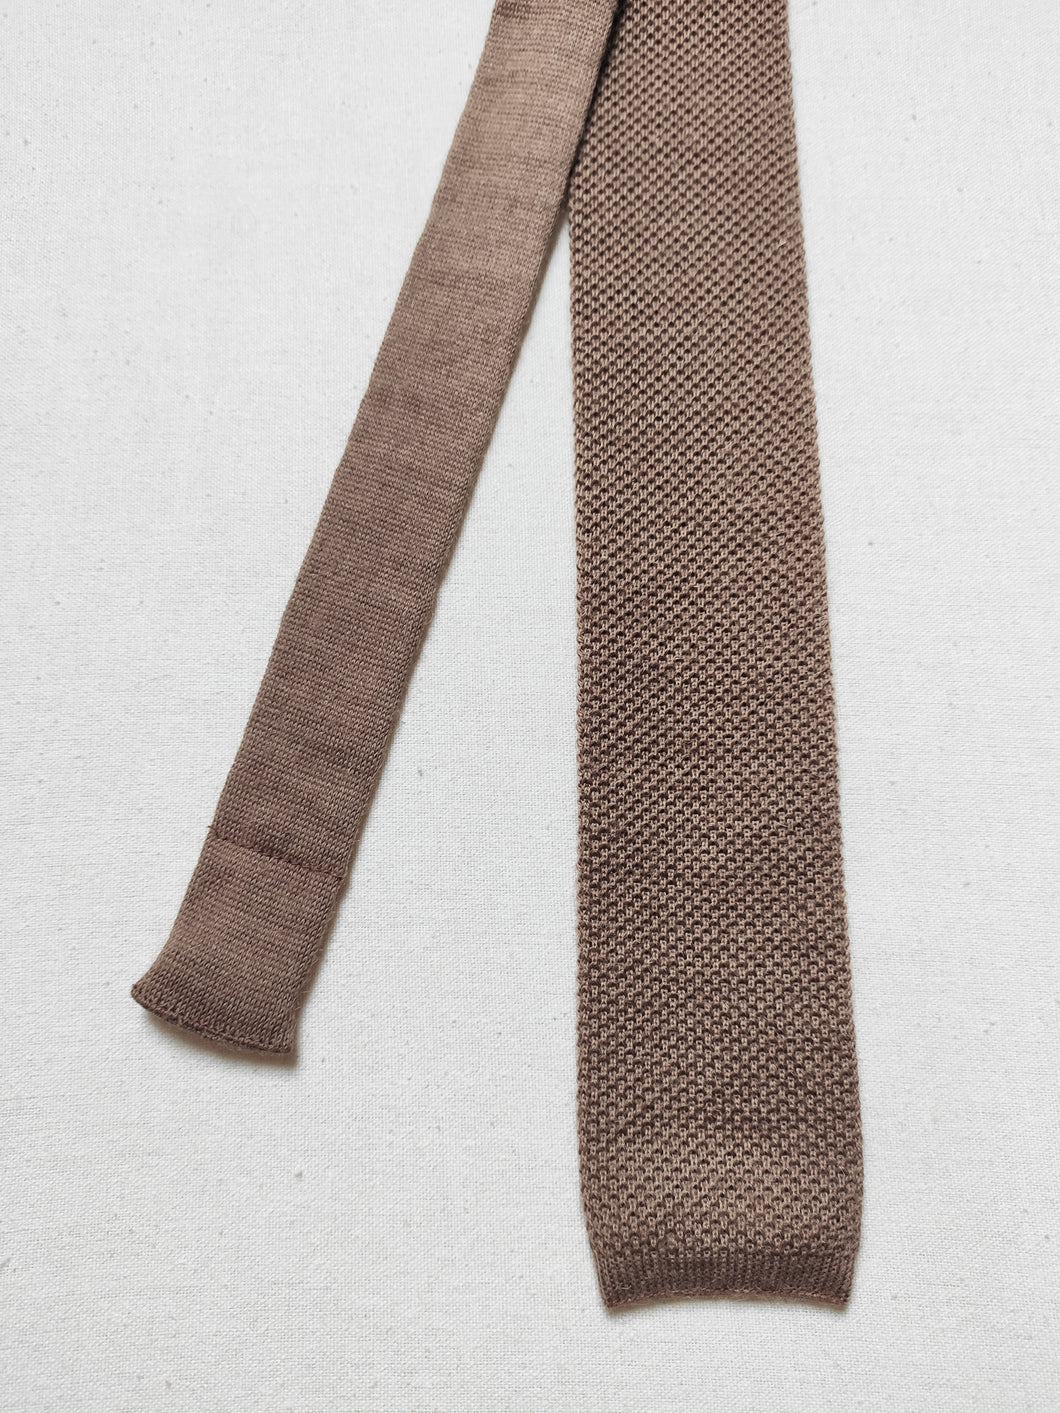 Cravate maille vintage en alpaga, laine et mohair St Michael Made in U.K